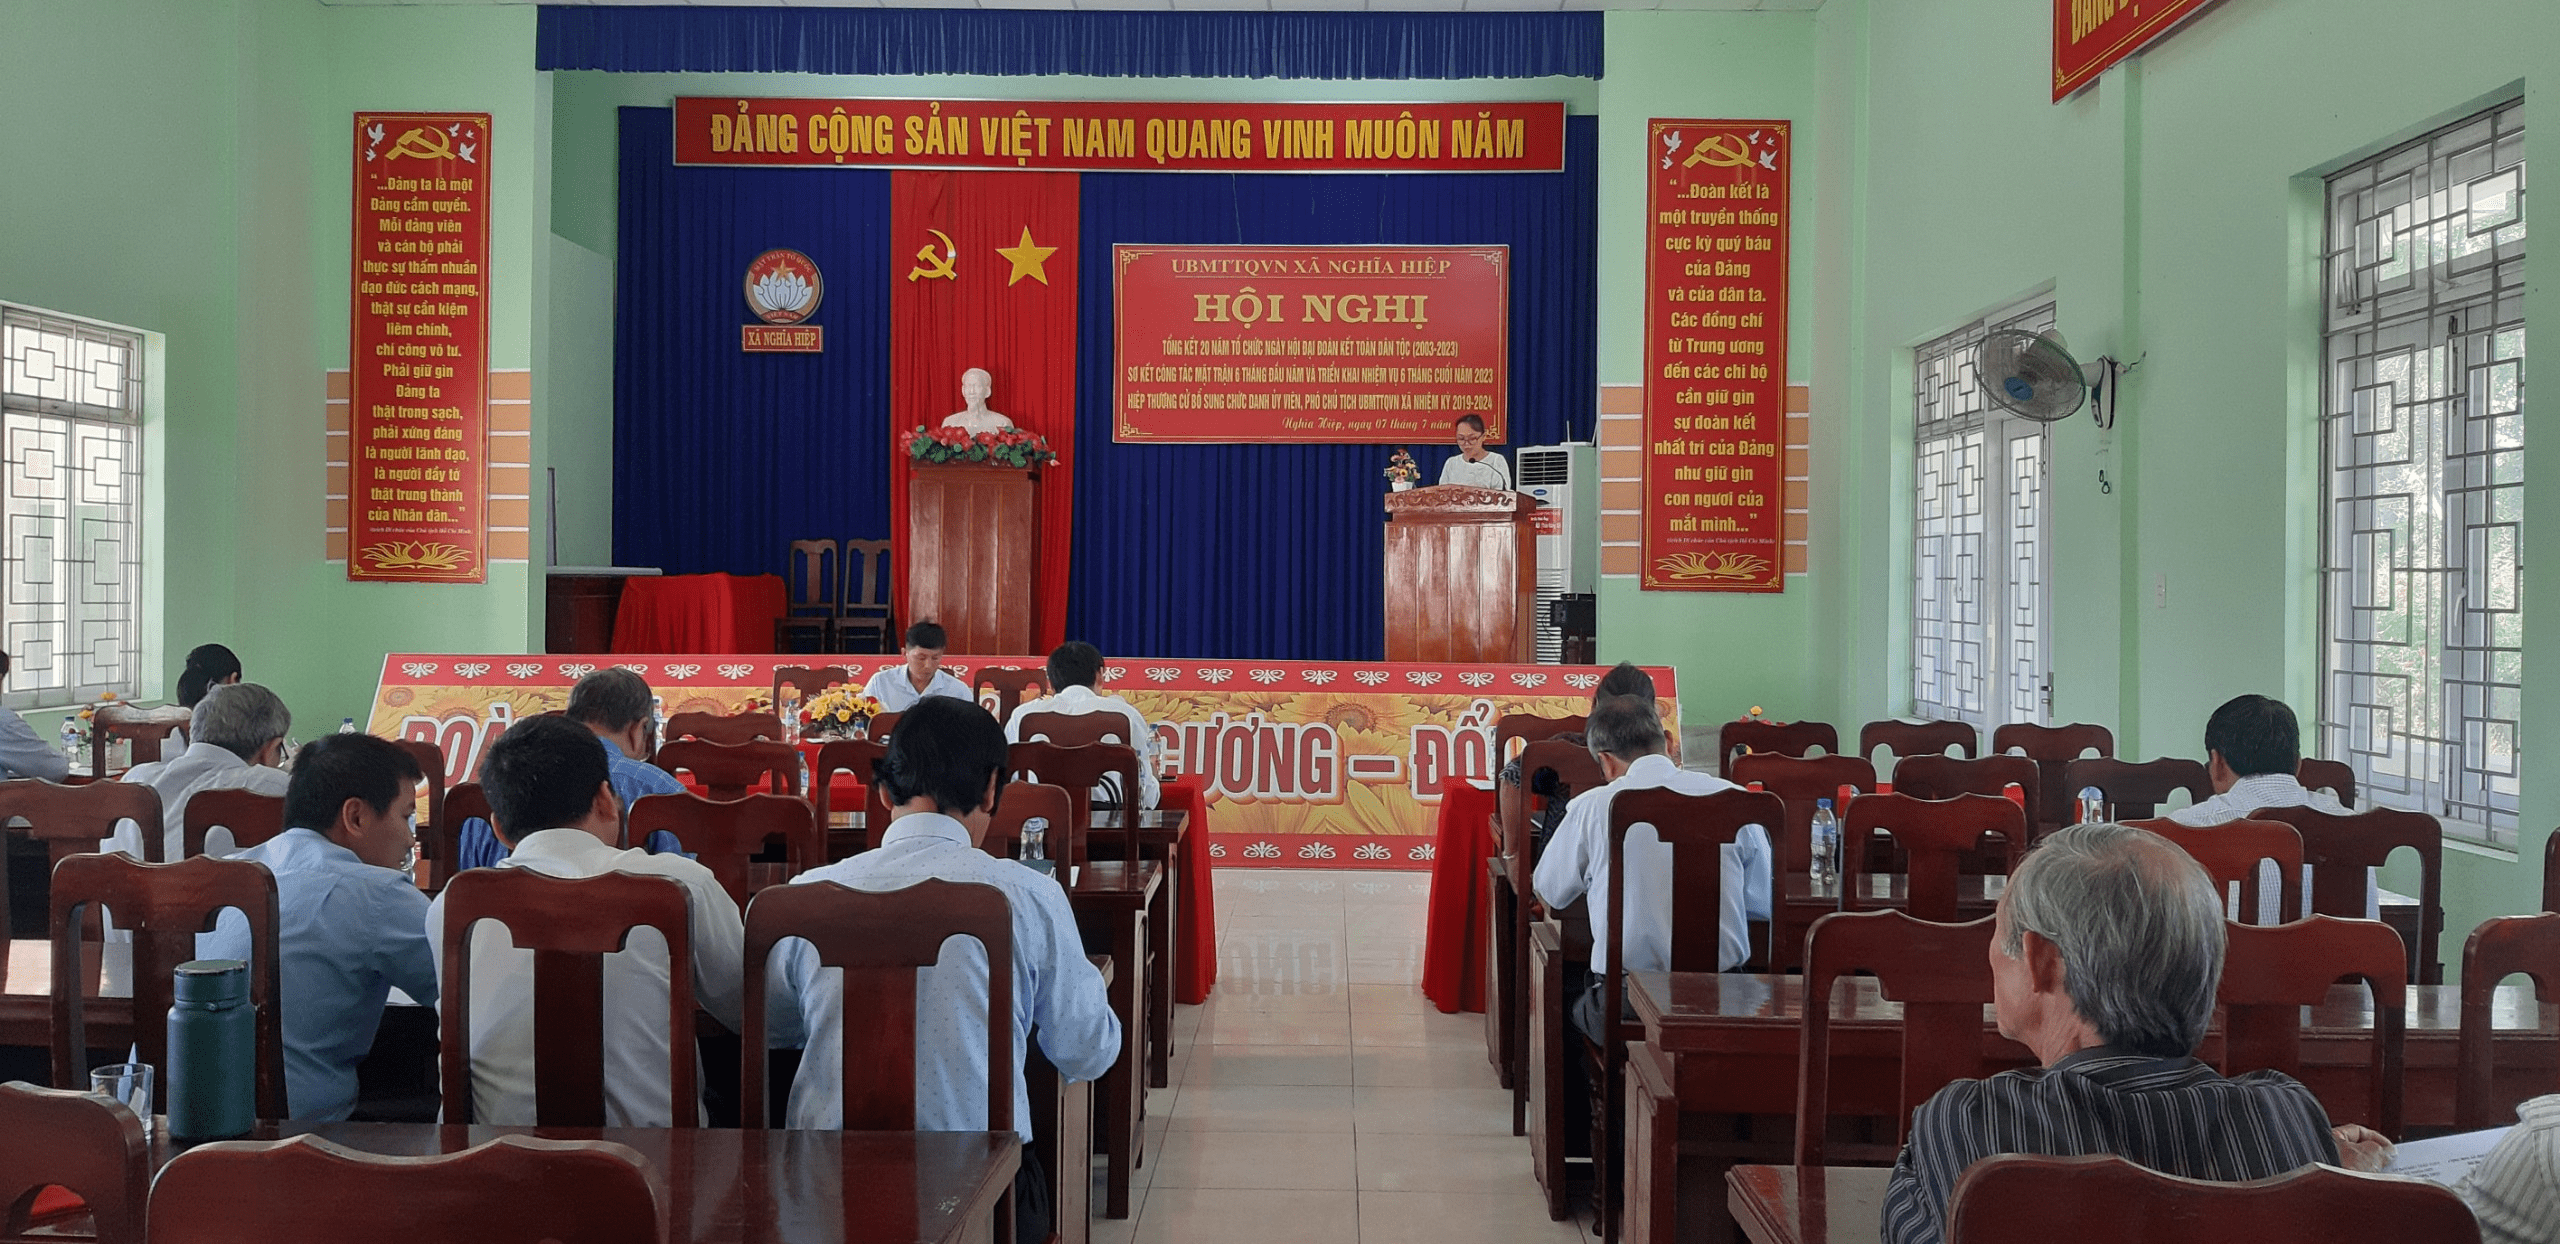 Ủy ban Mặt trận TQVN xã Nghĩa Hiệp tổ chức Hội nghị Tổng kết 20 năm tổ chức Ngày hội Đại đoàn kết toàn dân tộc giai đoạn 2003 - 2023